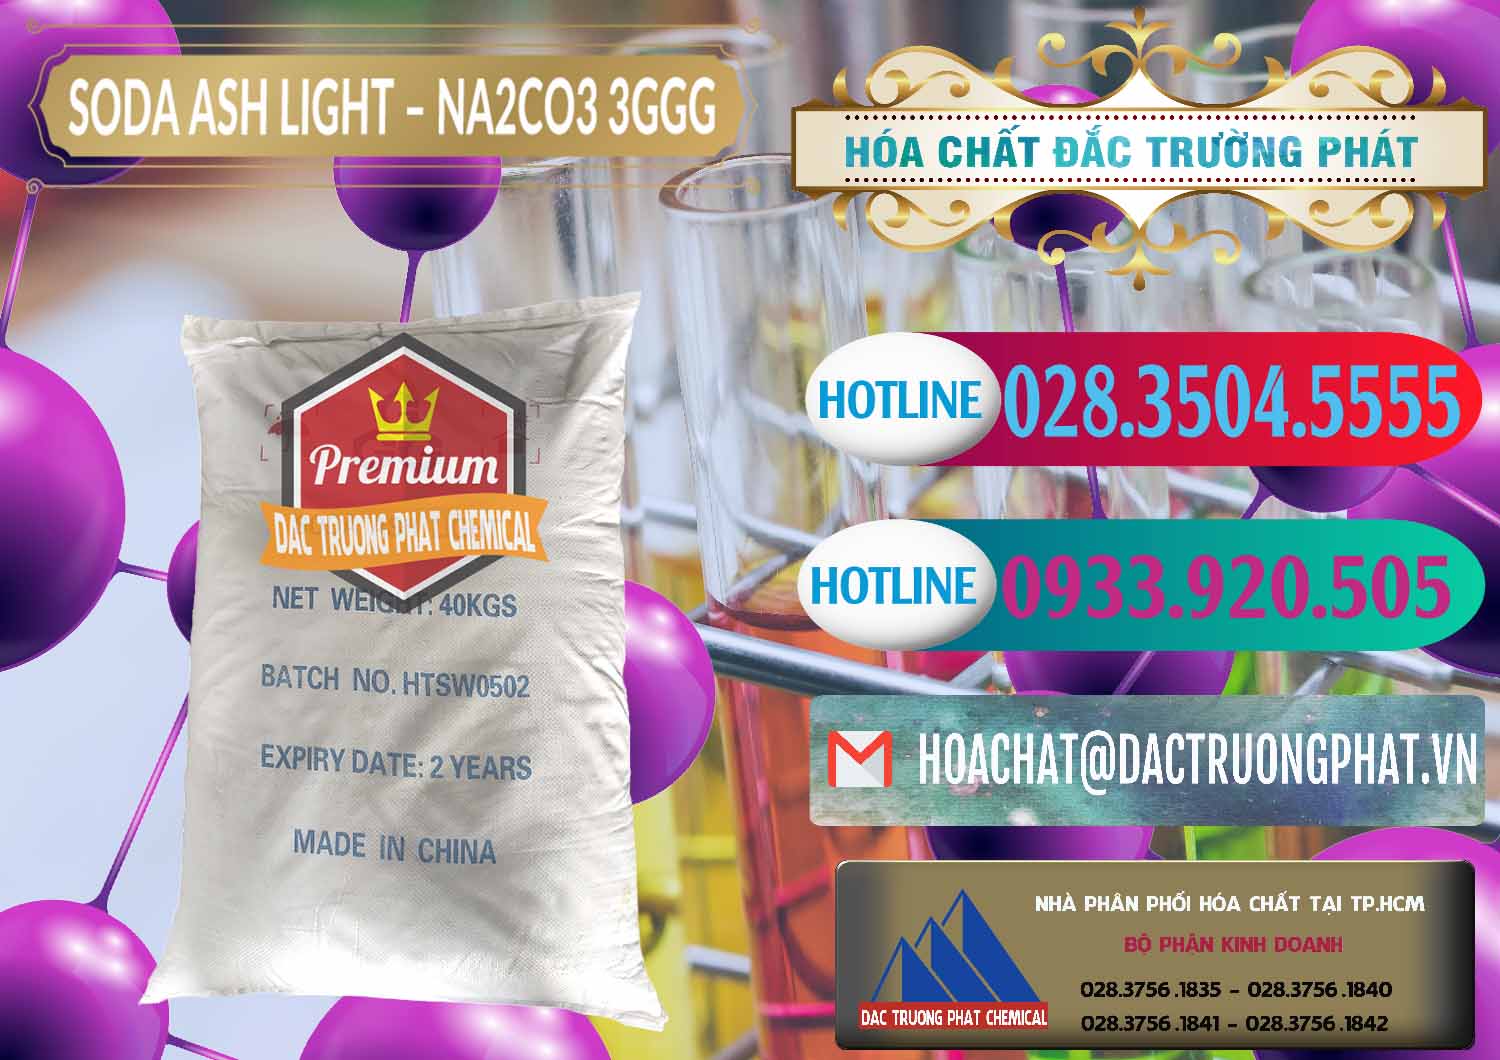 Cty chuyên kinh doanh ( bán ) Soda Ash Light - NA2CO3 3GGG Trung Quốc China - 0124 - Công ty phân phối ( bán ) hóa chất tại TP.HCM - truongphat.vn